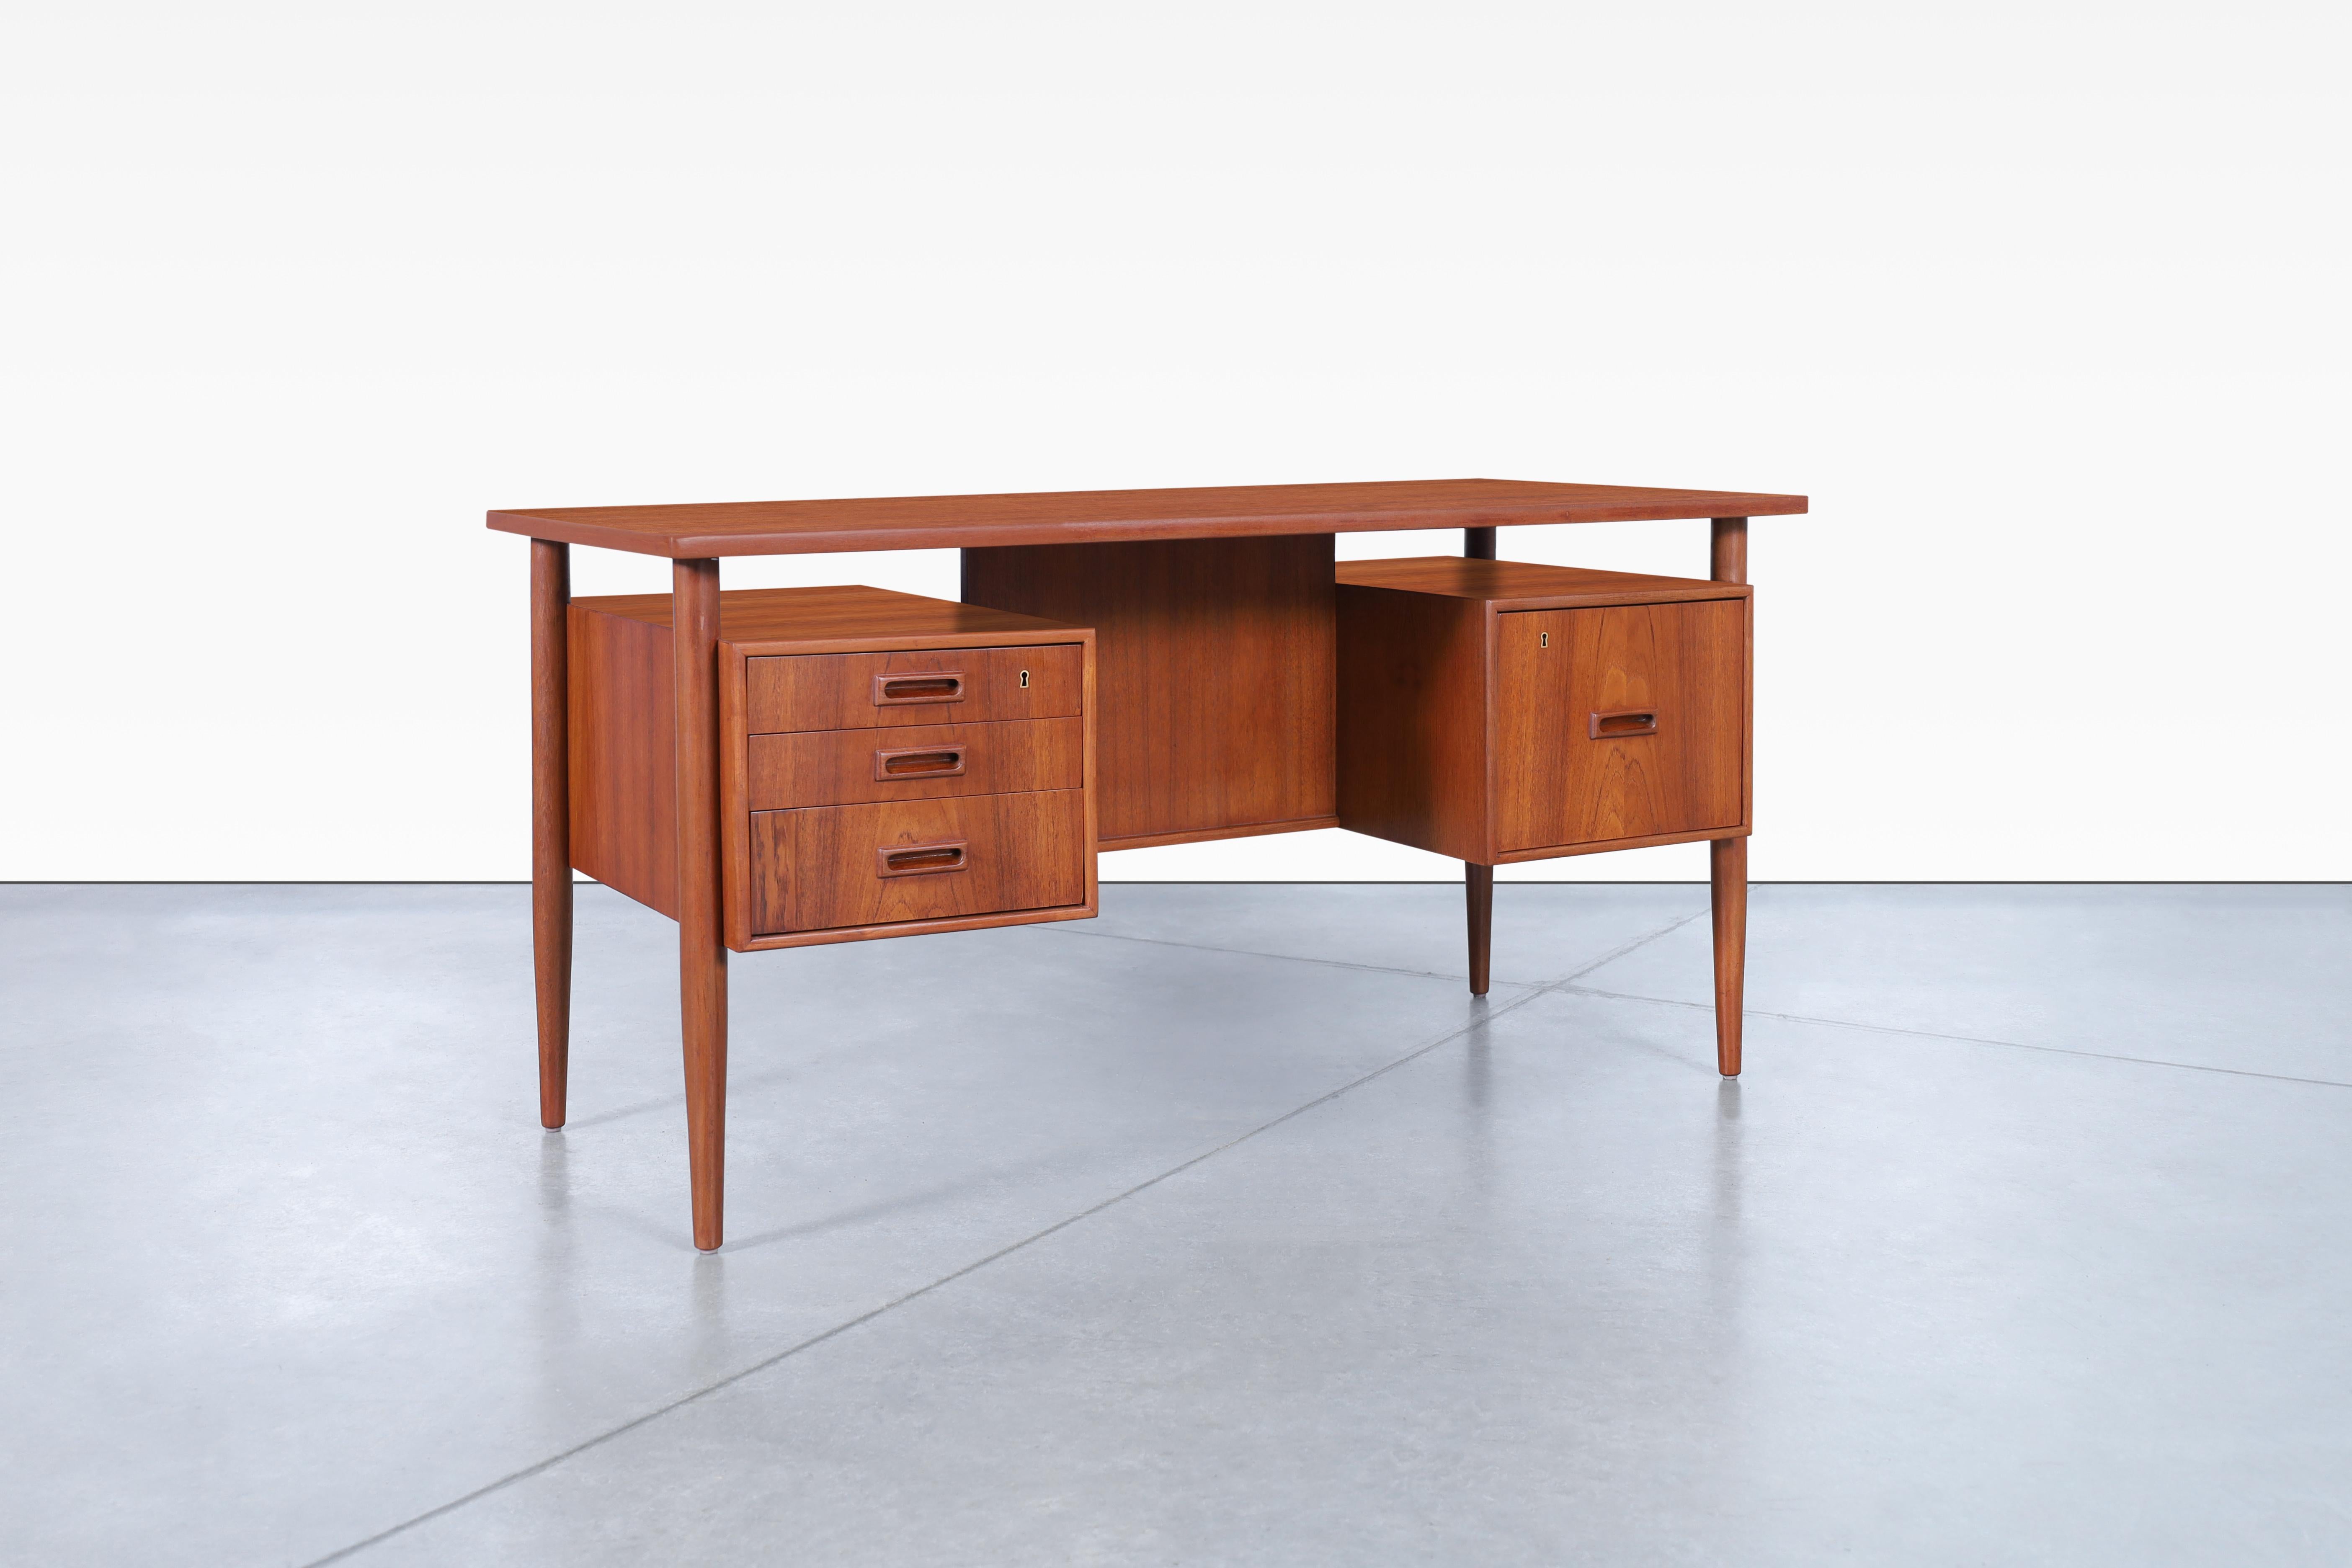 Schöner moderner dänischer Schreibtisch mit schwimmender Teakholzplatte, entworfen von Johannes Sorth für die Bornholm Møbelfabrik in Dänemark, ca. 1960er Jahre. Verfügt über insgesamt vier Schwalbenschwanz-Schubladen, die rechte Schublade ist eine